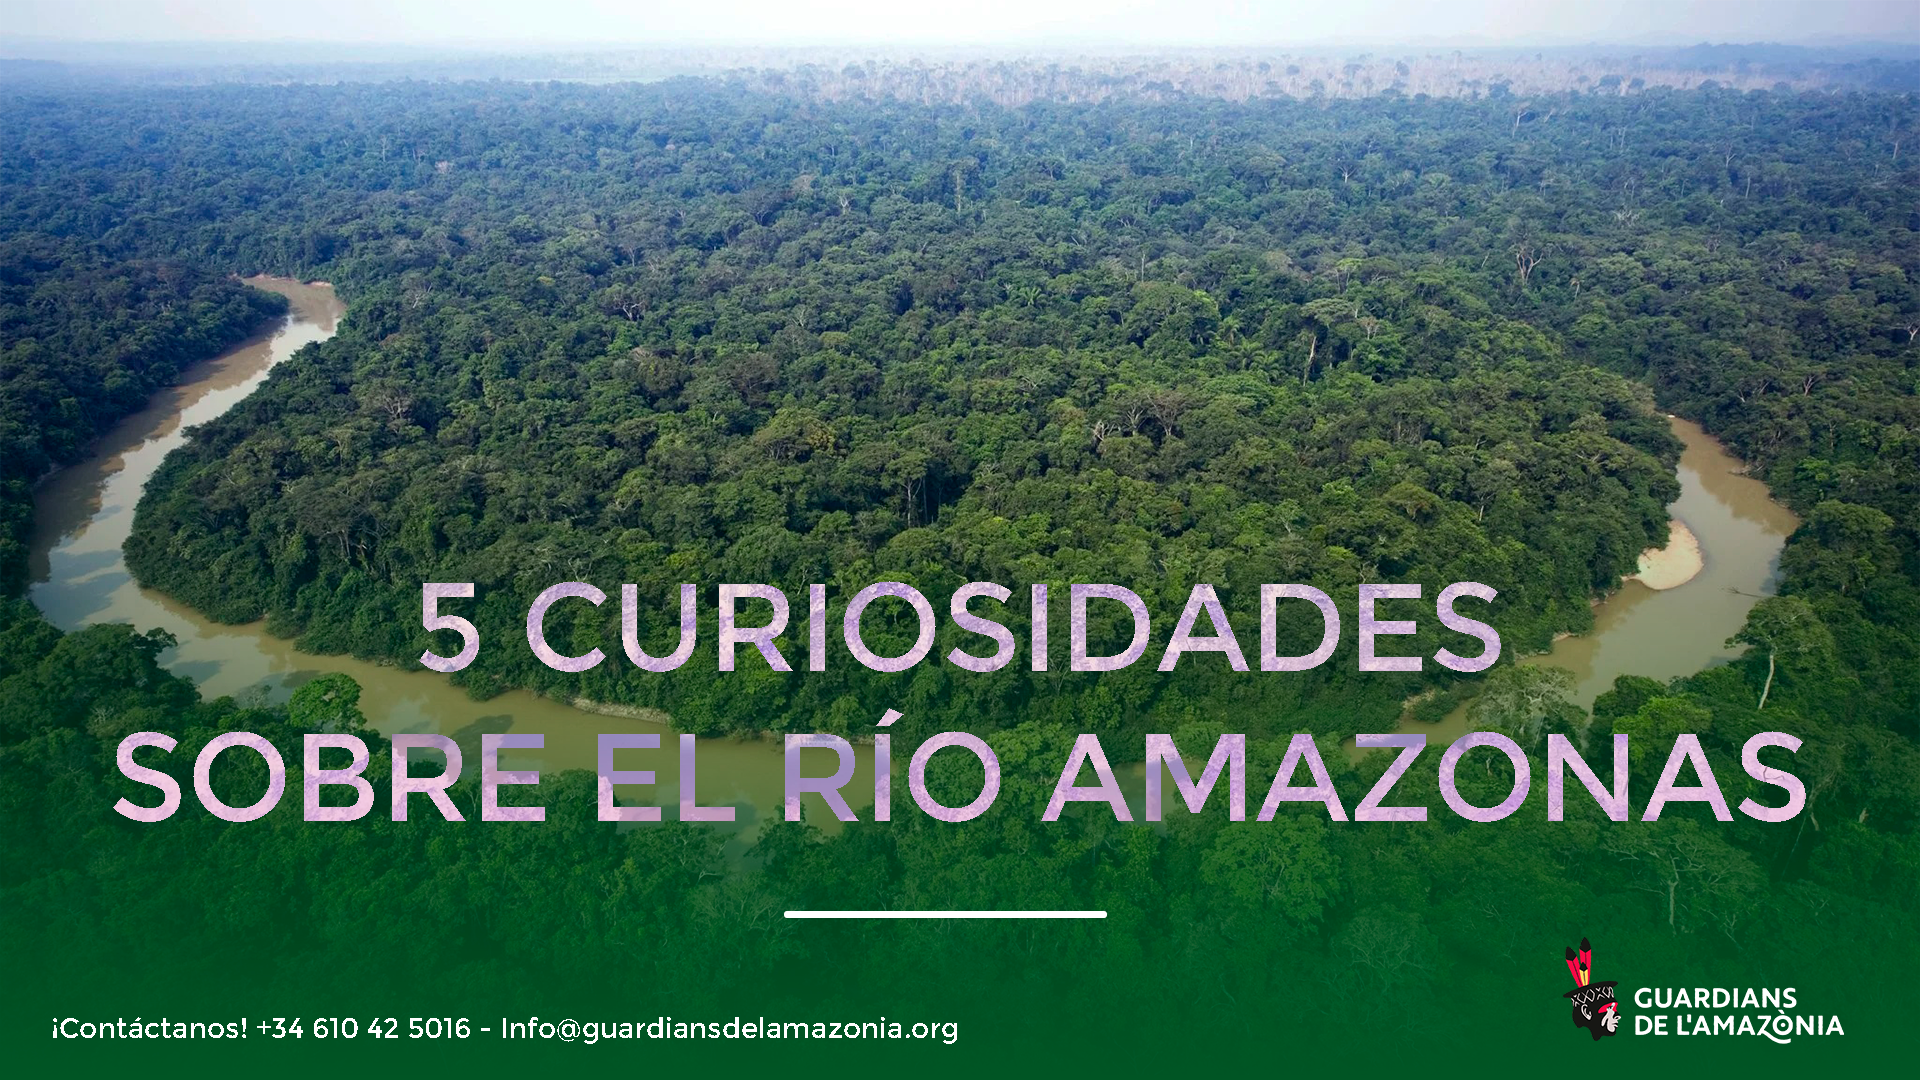 En este momento est谩s viendo 5 CURIOSIDADES SOBRE EL R脥O AMAZONAS